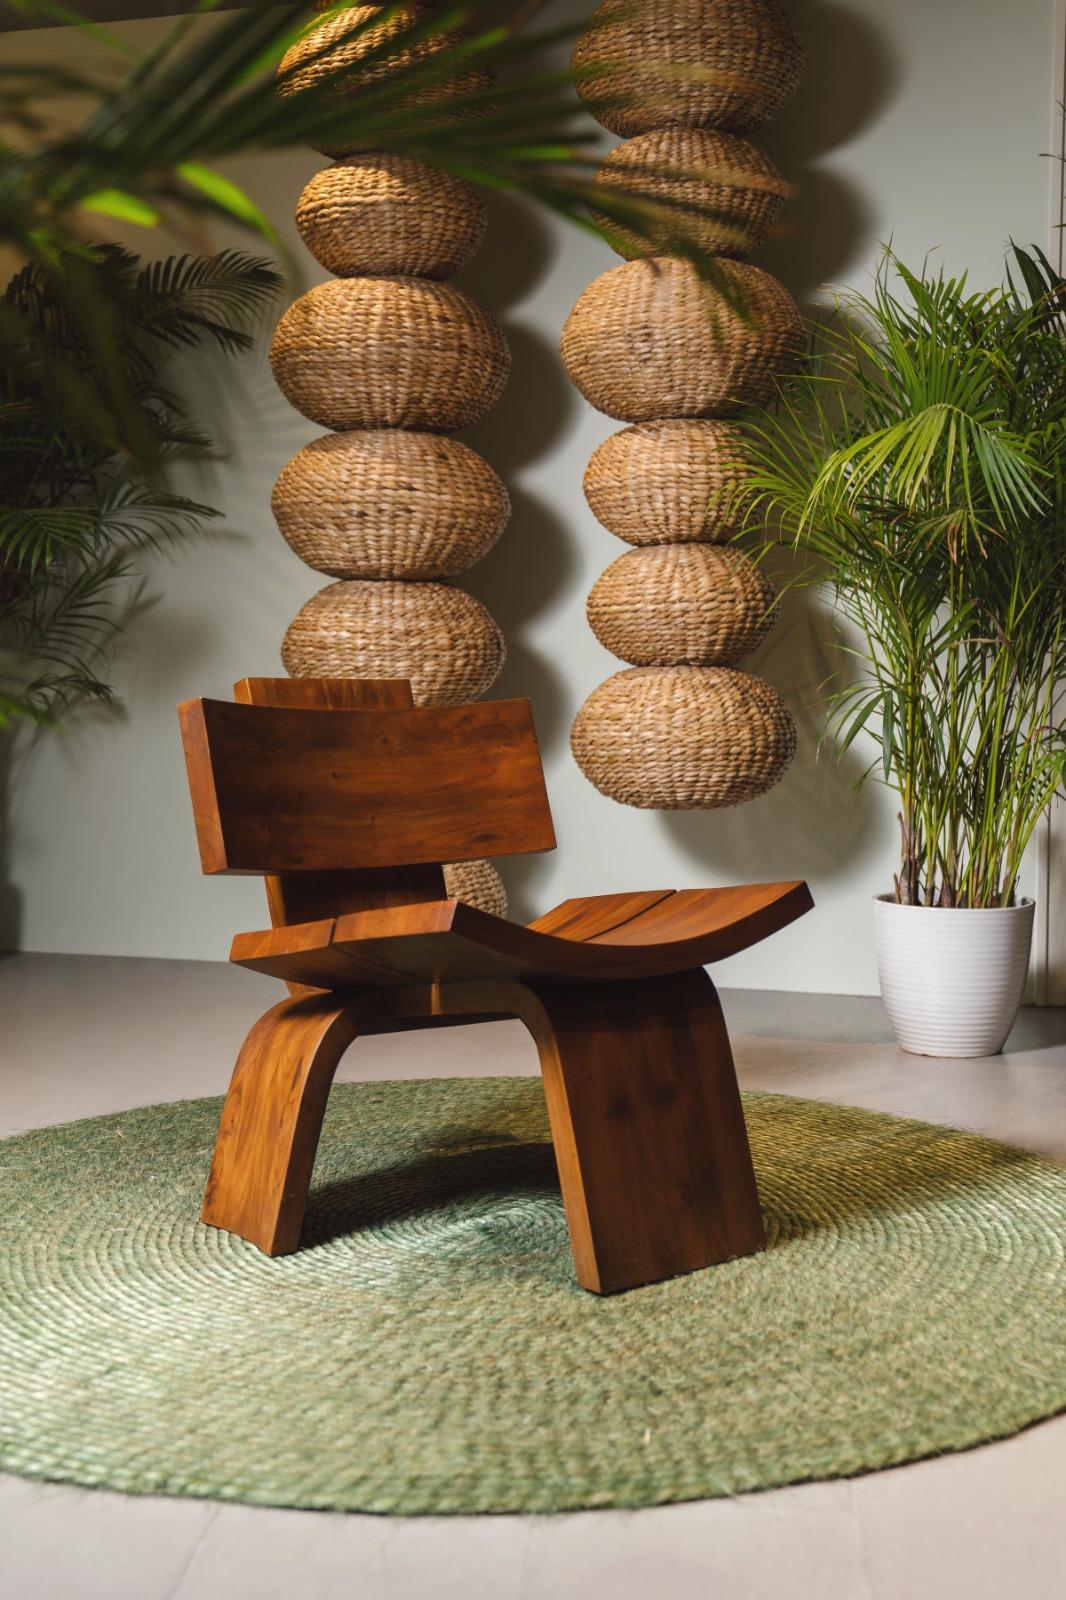 Der aus Massivholz gefertigte Chair-02 Lounge Chair ist ein Designerstück und ein bequemer Loungesessel für Ihr Zuhause. Inspiriert von Dalisay Collection'S ursprünglichem 3-beinigen Chair-01, hebt dieses Stück handgeschnitzte, weiche Kurven und